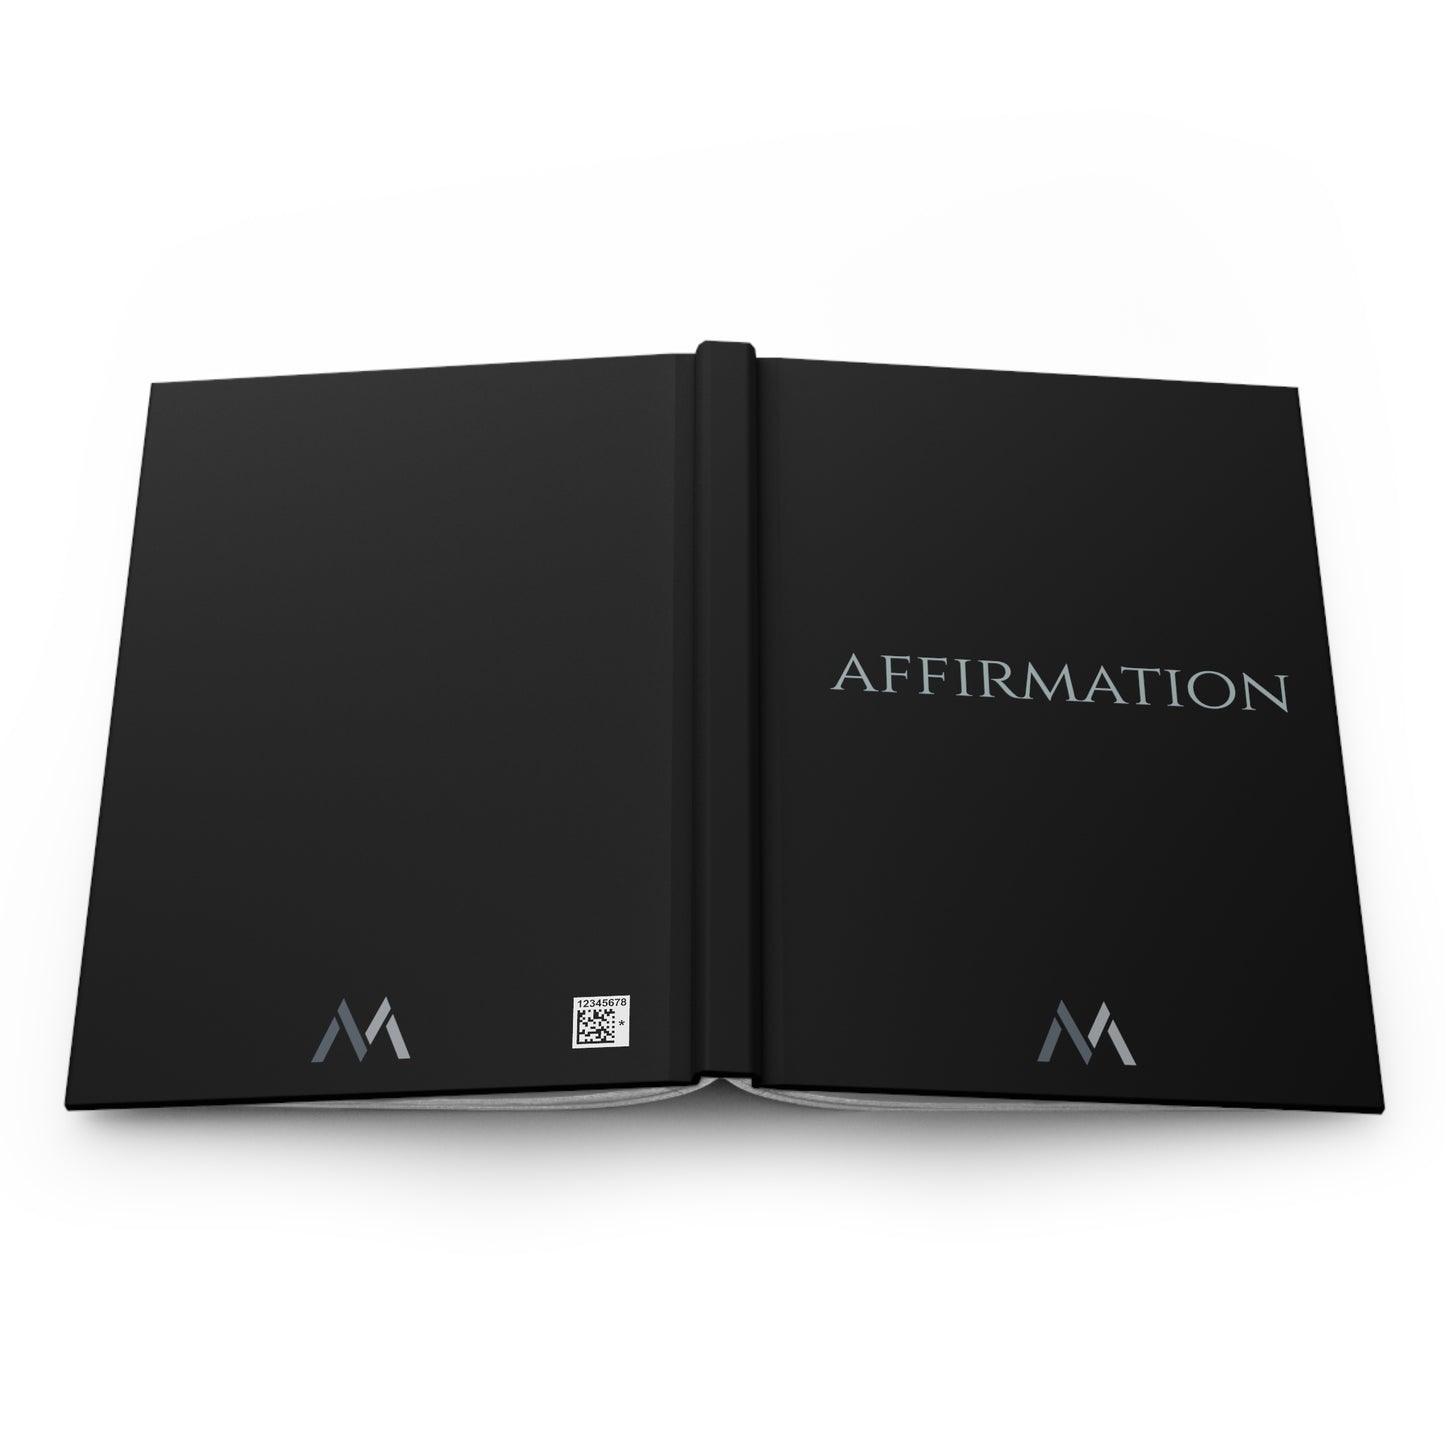 "AFFIRMATION" Hard Cover Matte Black Journal